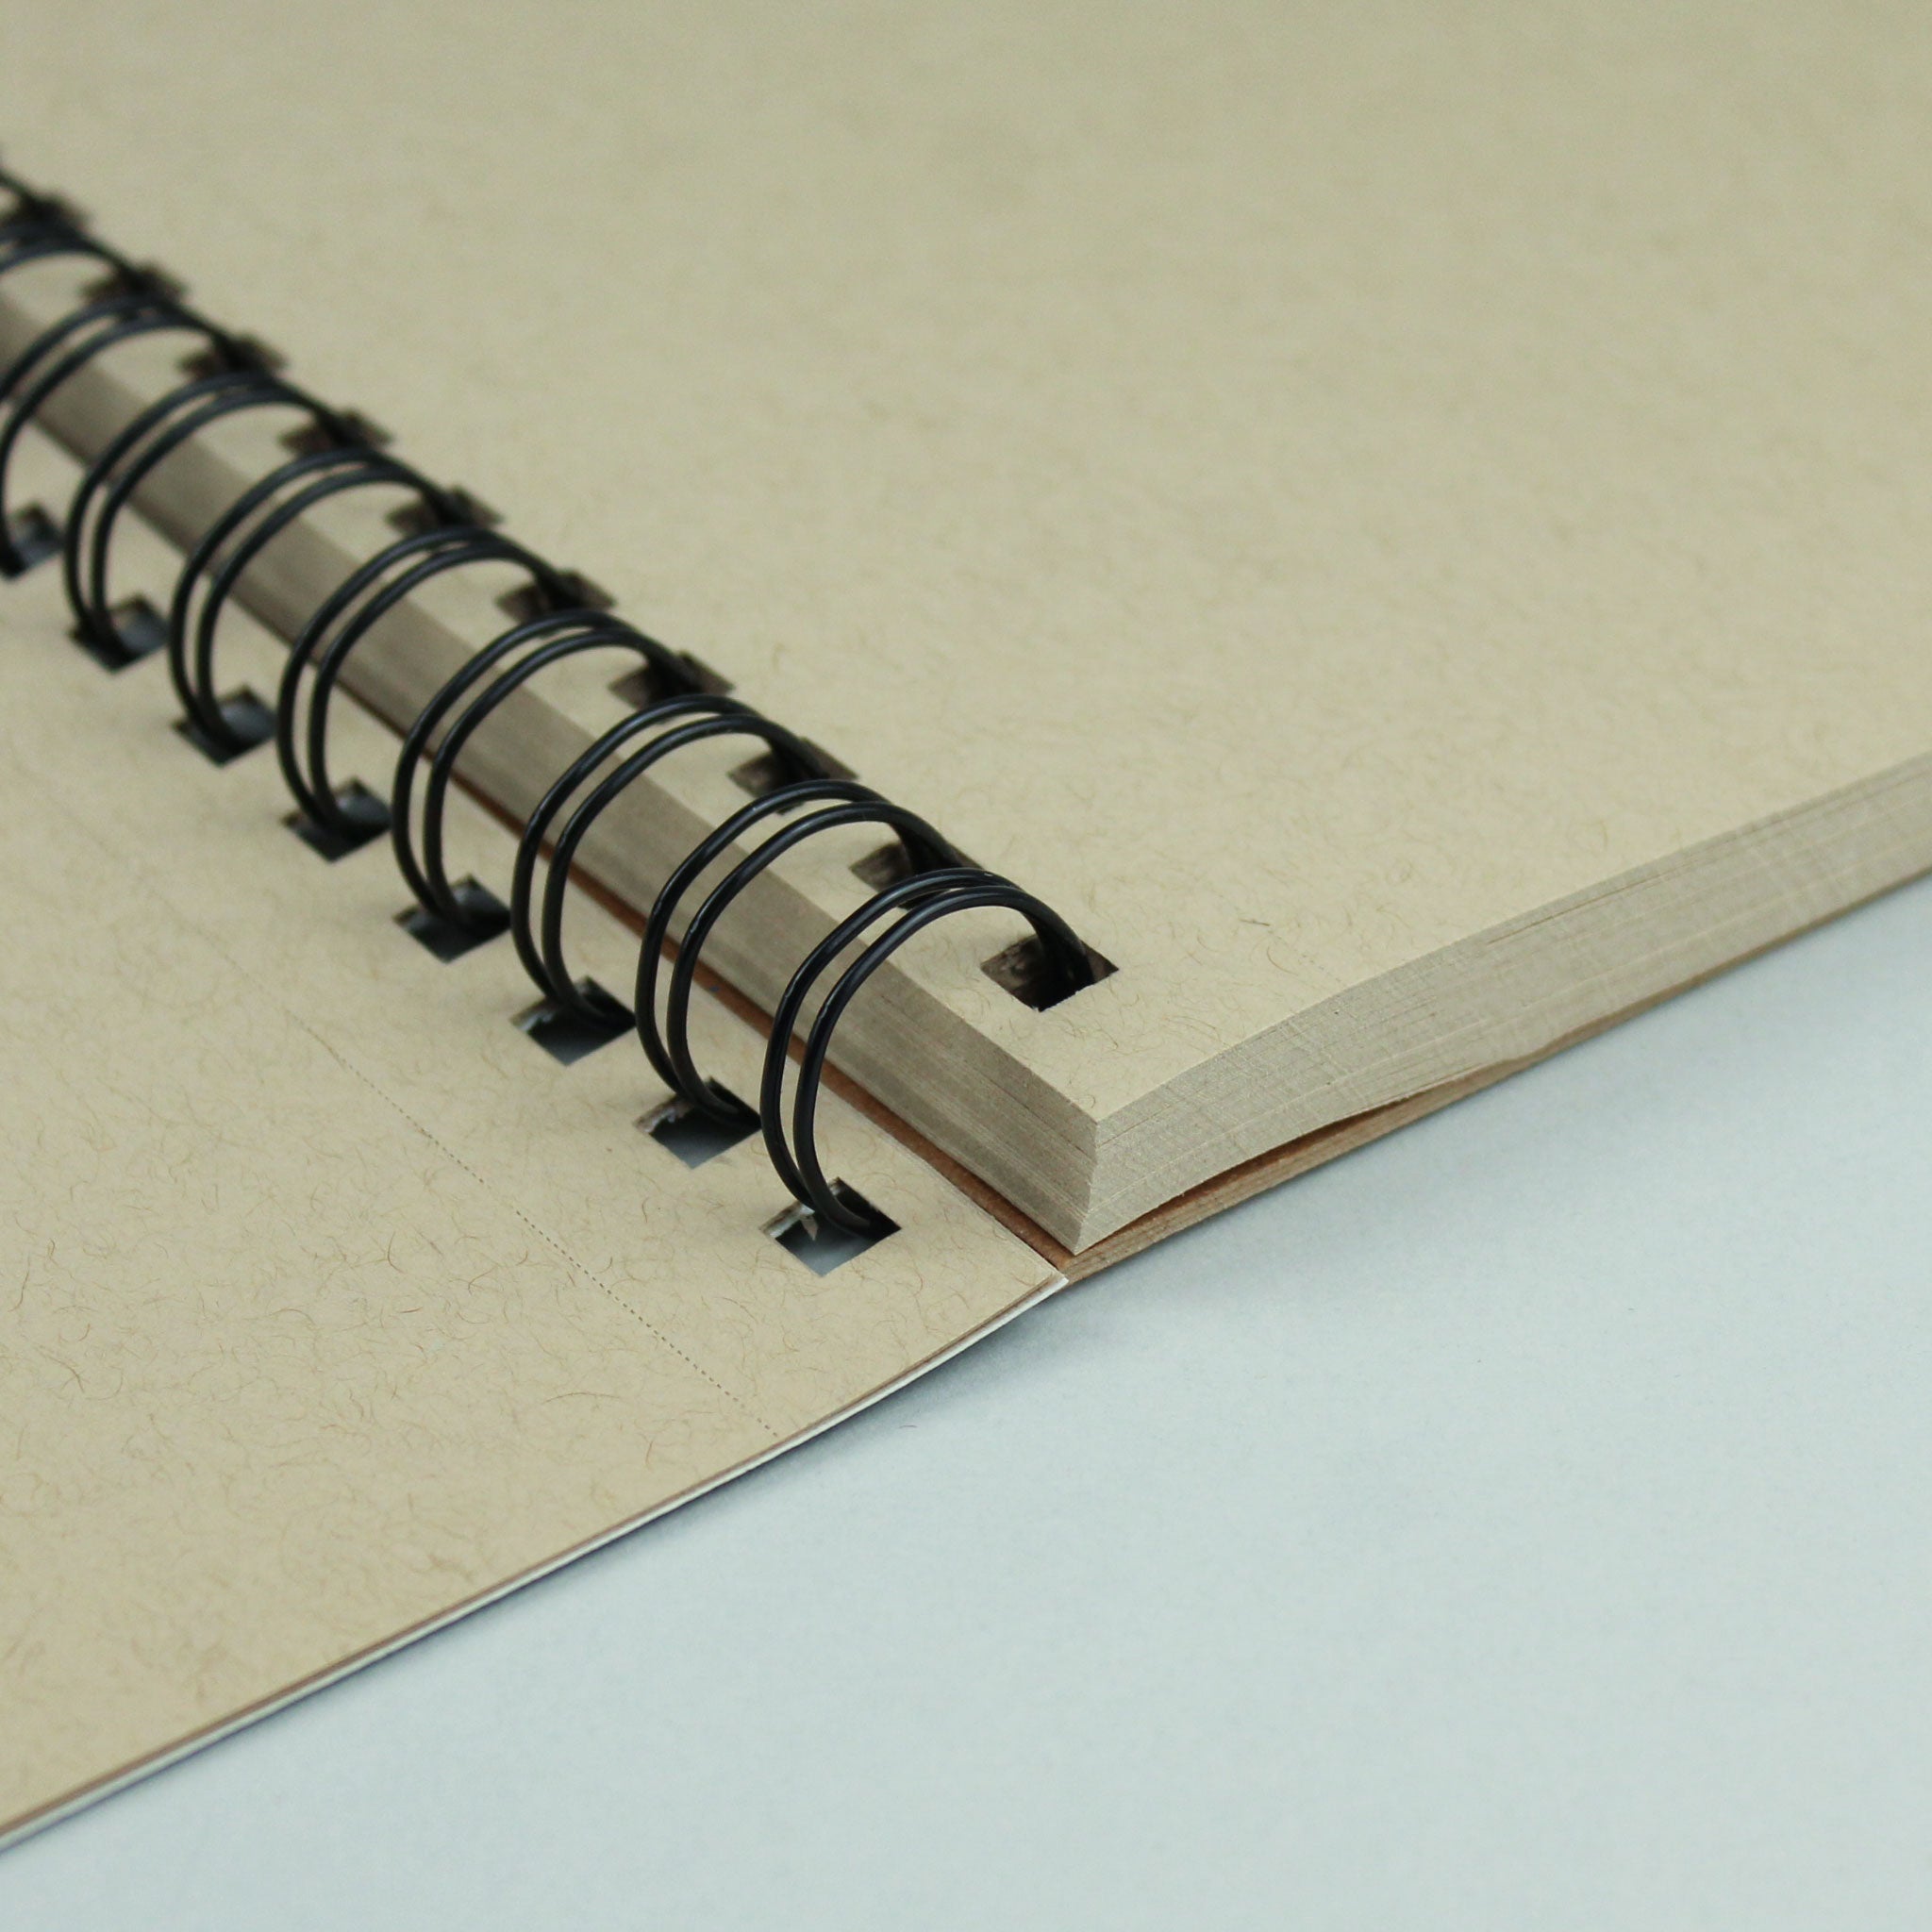 Strathmore Toned Sketchbooks: 50 Pages, 118 gsm (80lb), Paperback